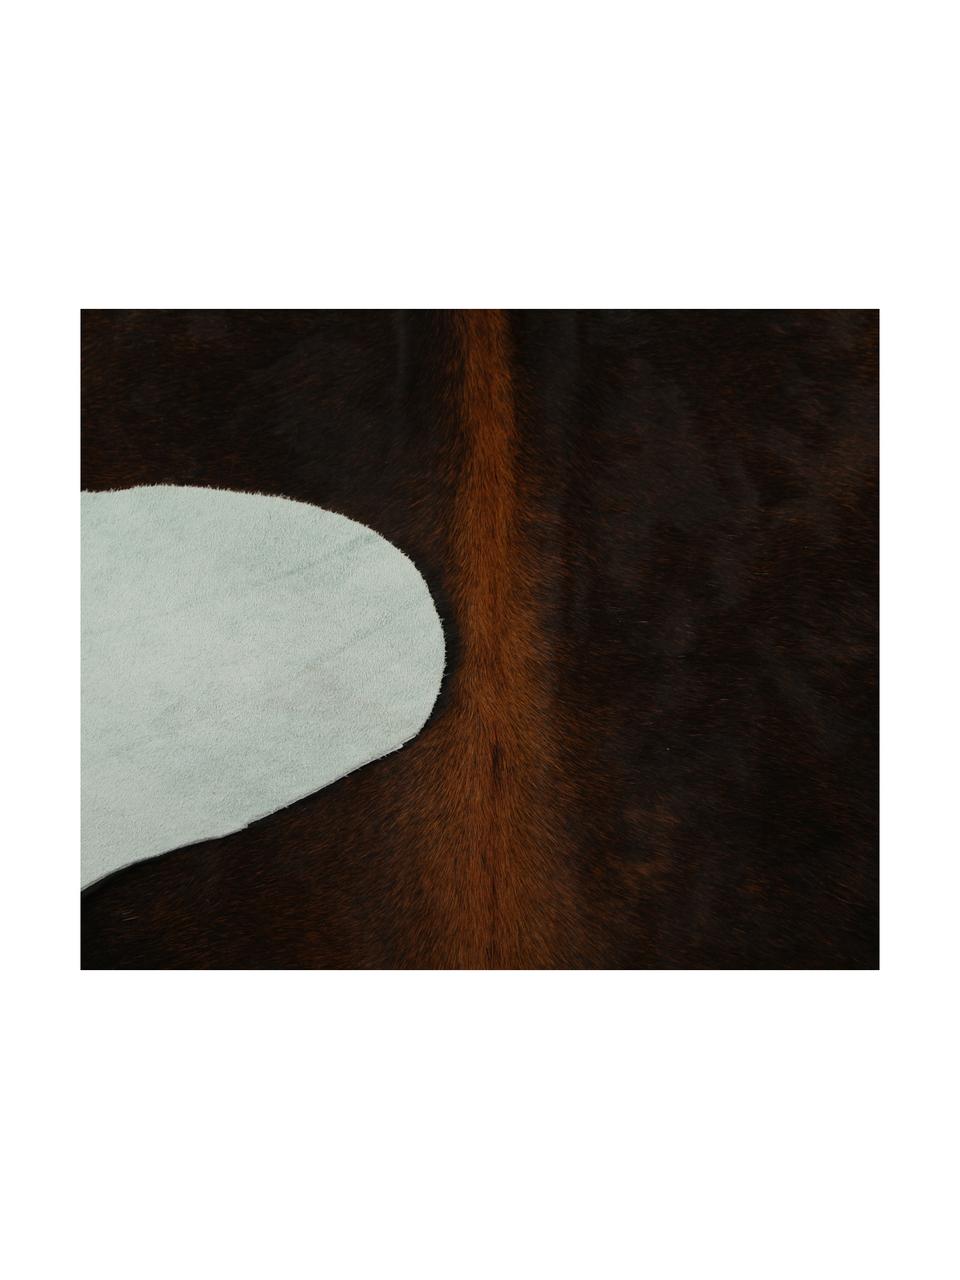 Dywan ze skóry bydlęcej Aquarius, Skóra bydlęca, Ciemny brązowy, Unikatowa skóra bydlęca 940, 160 x 180 cm